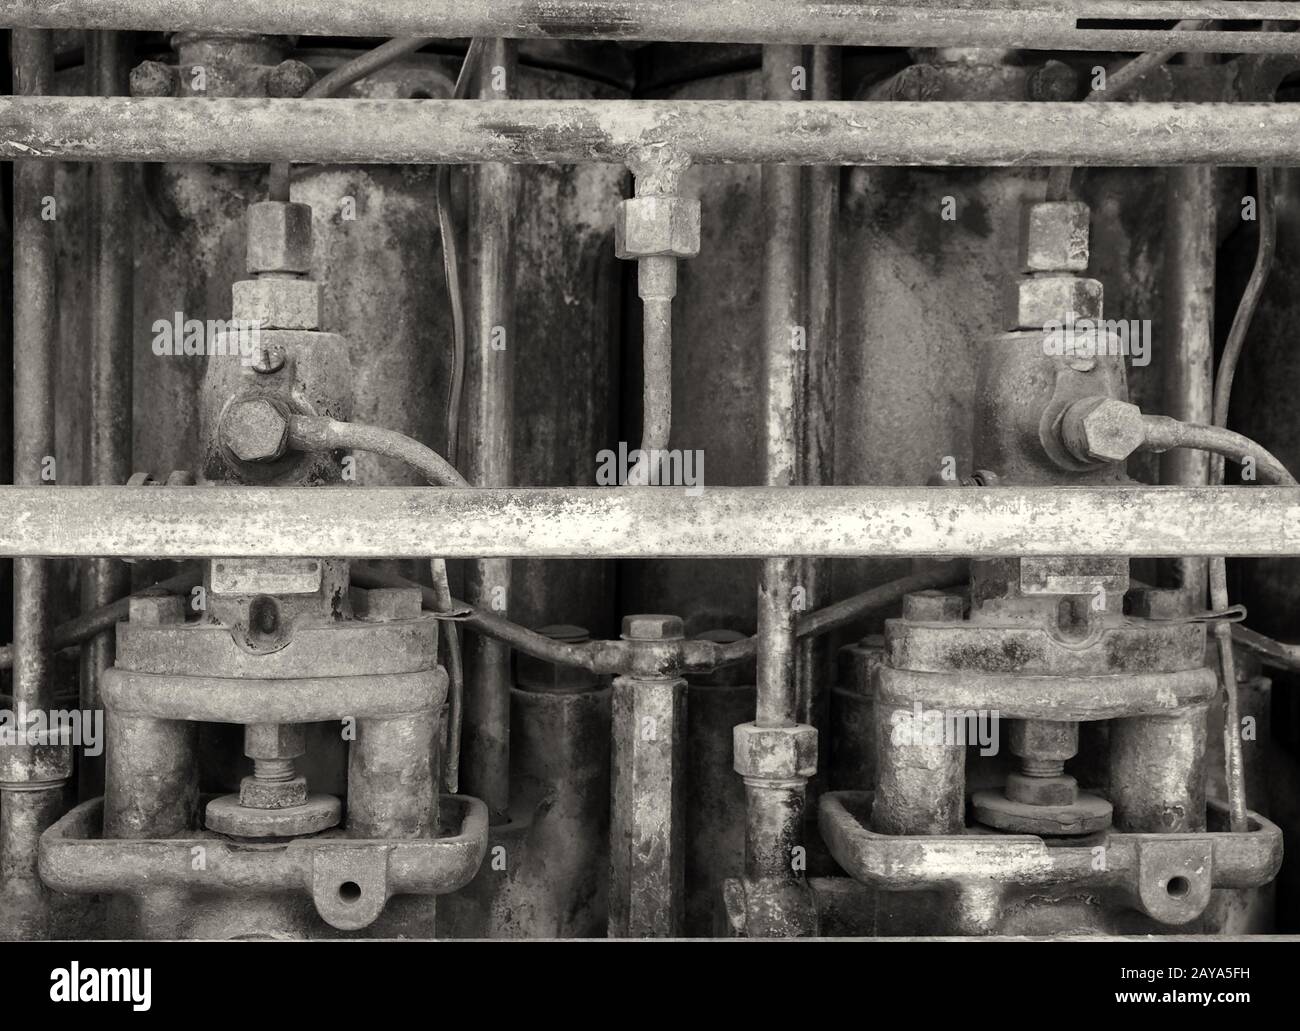 immagine di primo piano monocromatica di un vecchio motore arrugginito Foto Stock